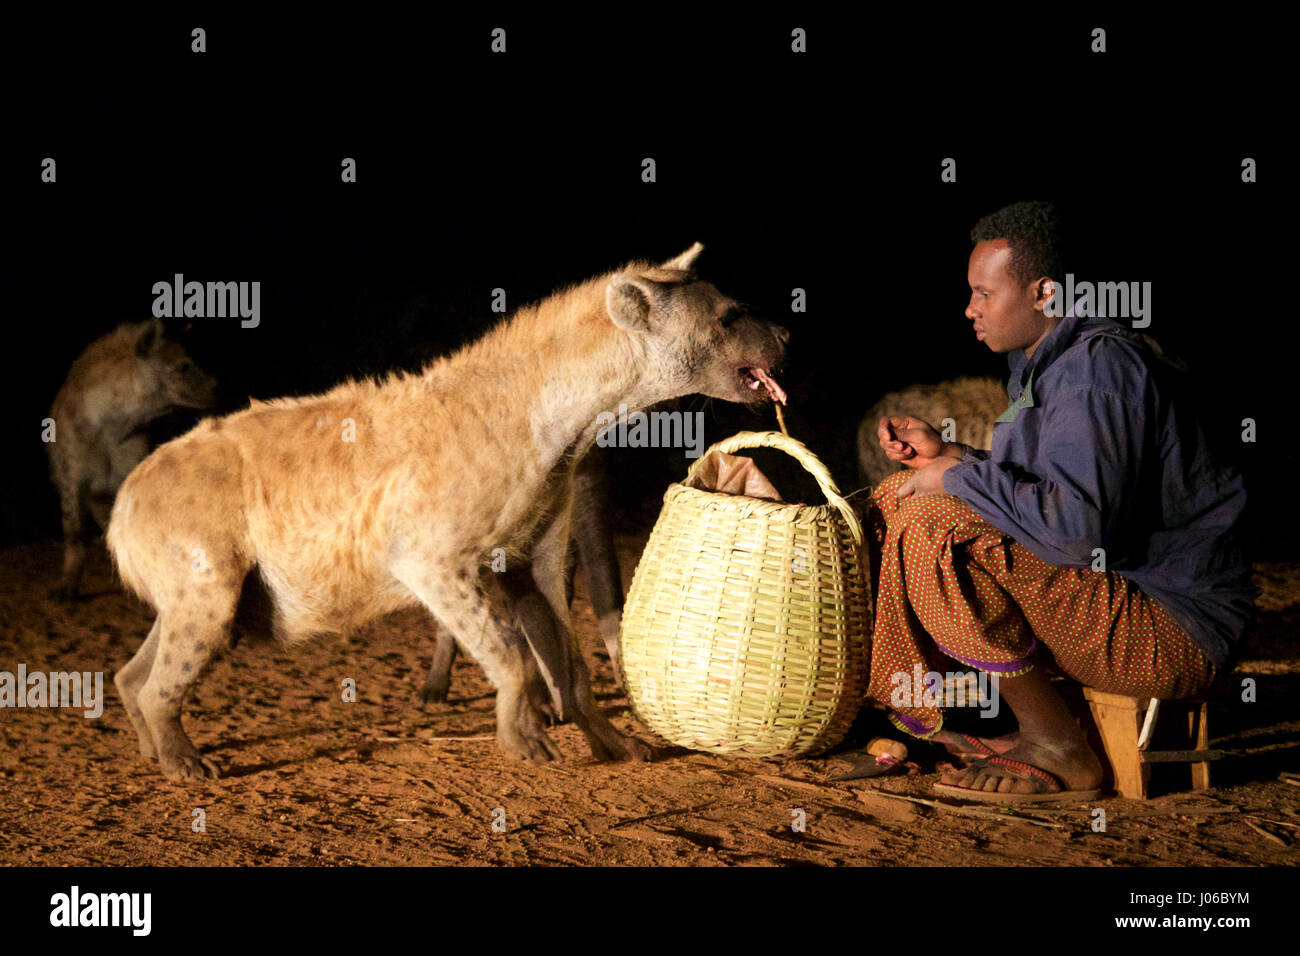 HARAR, Äthiopien: Neue 'Hyäne Man' Abbas Saleh Fütterung einer Hyäne. Treffen Sie die unglaubliche Hyäne Mann von Harar, die nun seinen Titel auf seinen Sohn nach dreißig Jahren, am besten mit Freunden einen Clan dieser fleischfressende Tiere vorbei ist. Bilder zeigen einen jungen Erben die Hyäne Mann Titel nach der jahrhundertealten Tradition seines Volkes vor möglichen Angriffen durch Hyänen ruhig füttern diese wilden Radikalfänger schützen. Er ist völlig frei von jeglicher Art von Angst Sie assoziieren würde, wobei dies in der Nähe Afrikas produktivsten Fleischfresser.  Hyänen sind dafür bekannt, angreifen und töten Menschen, sondern als Thes Stockfoto